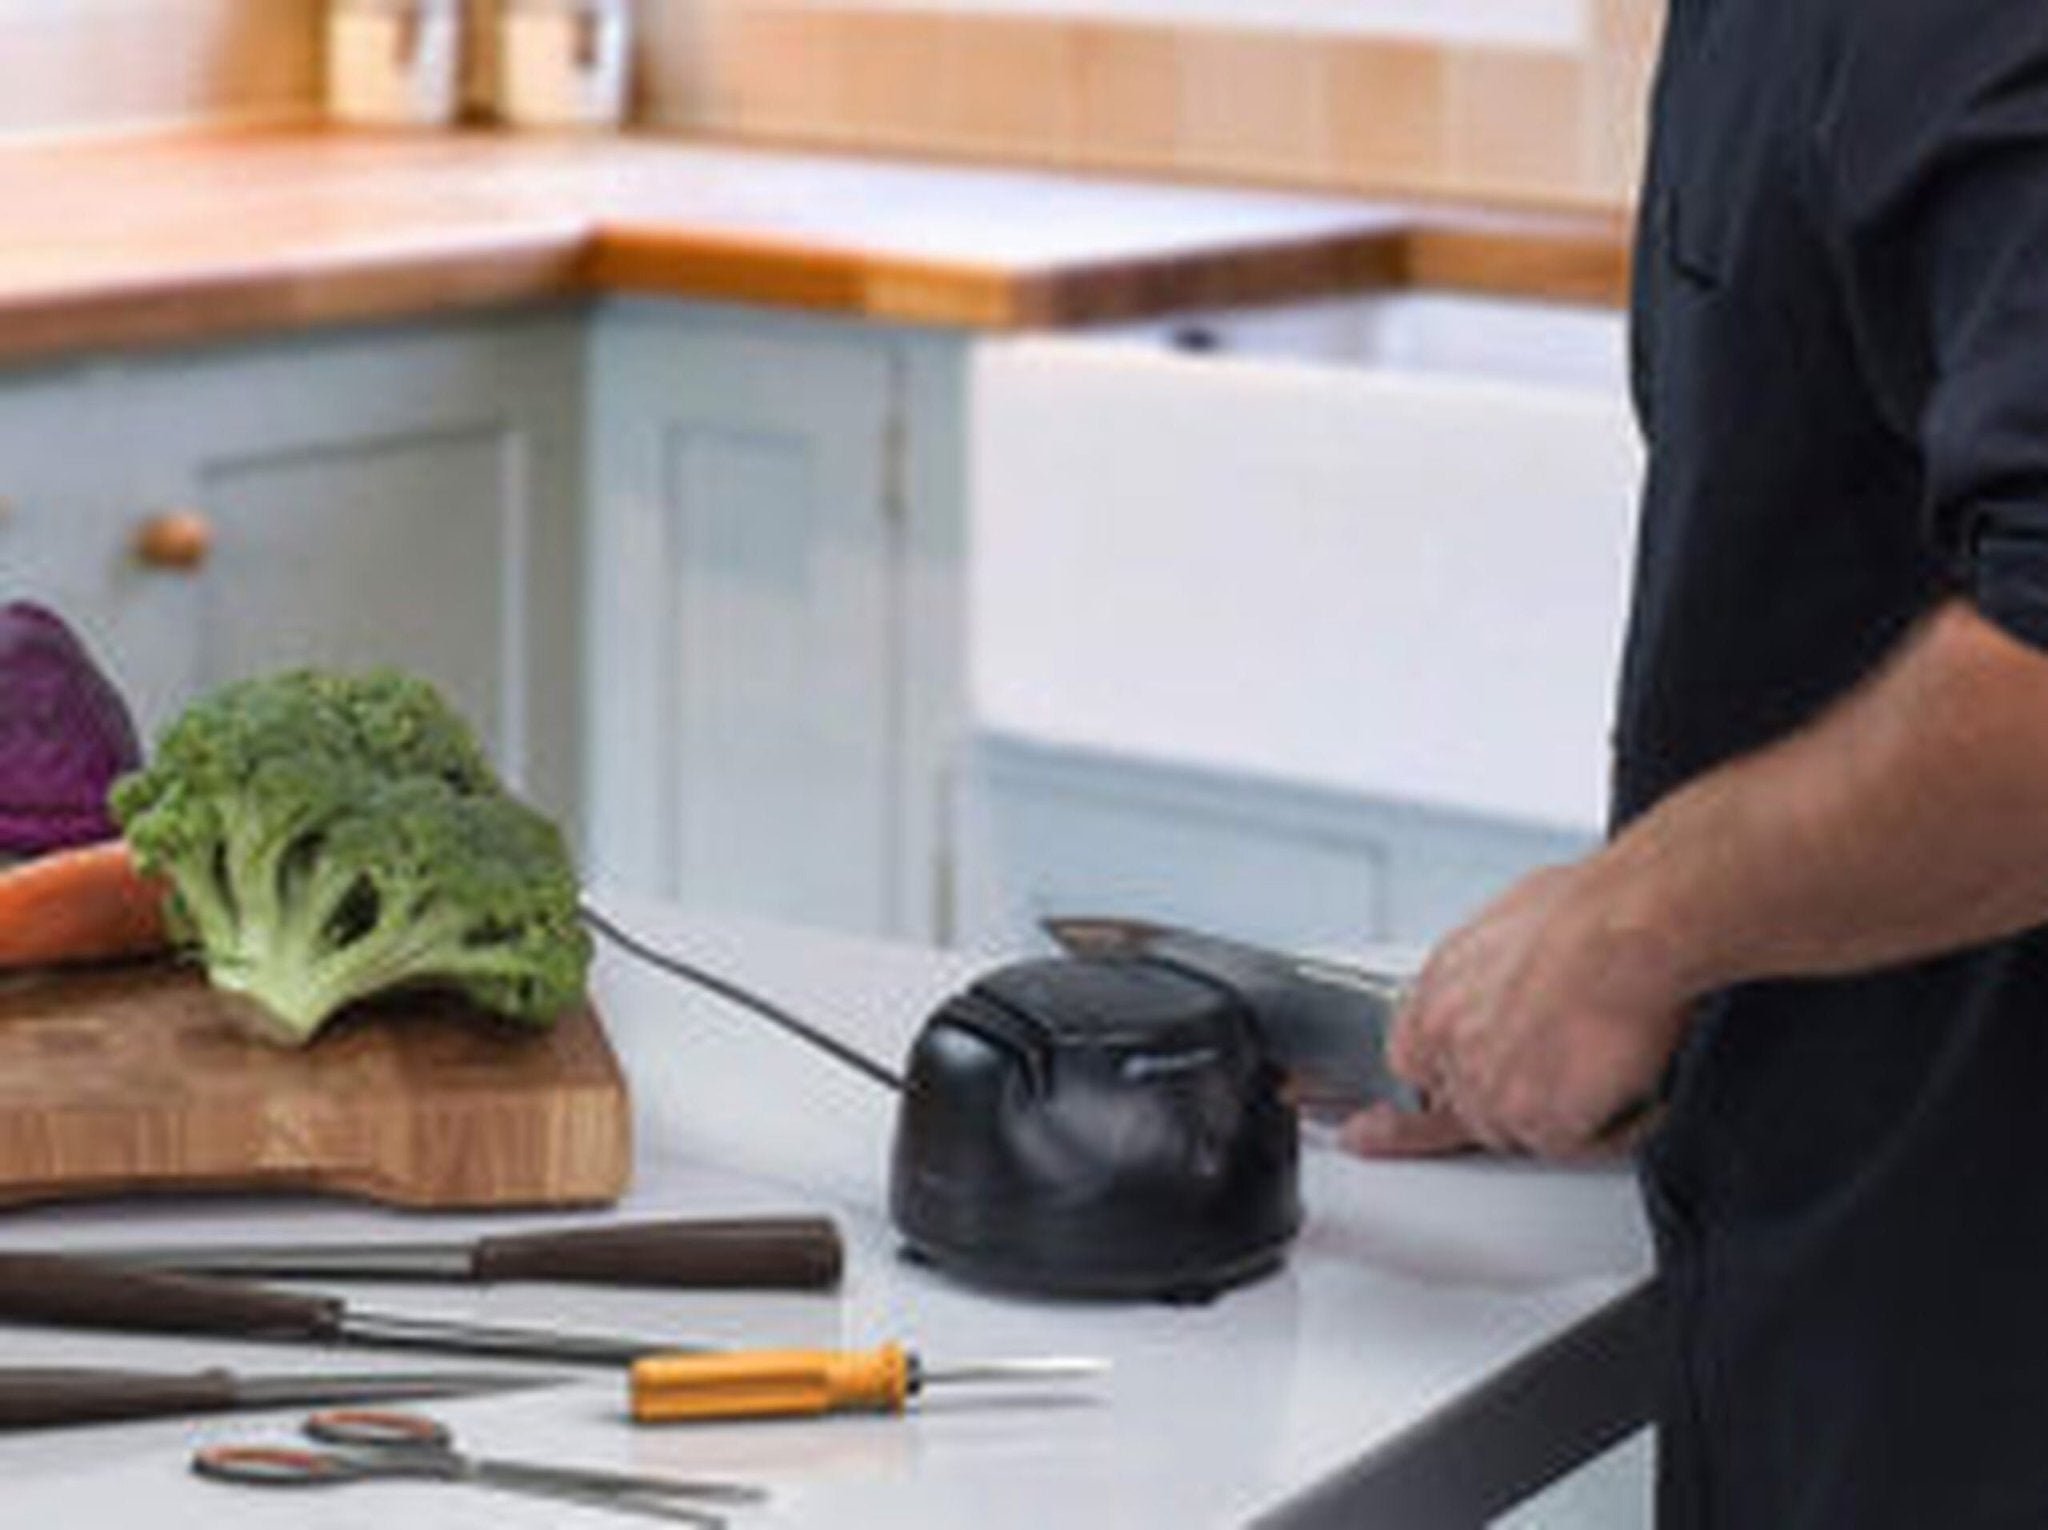 Electric Kitchen Knife Sharpener